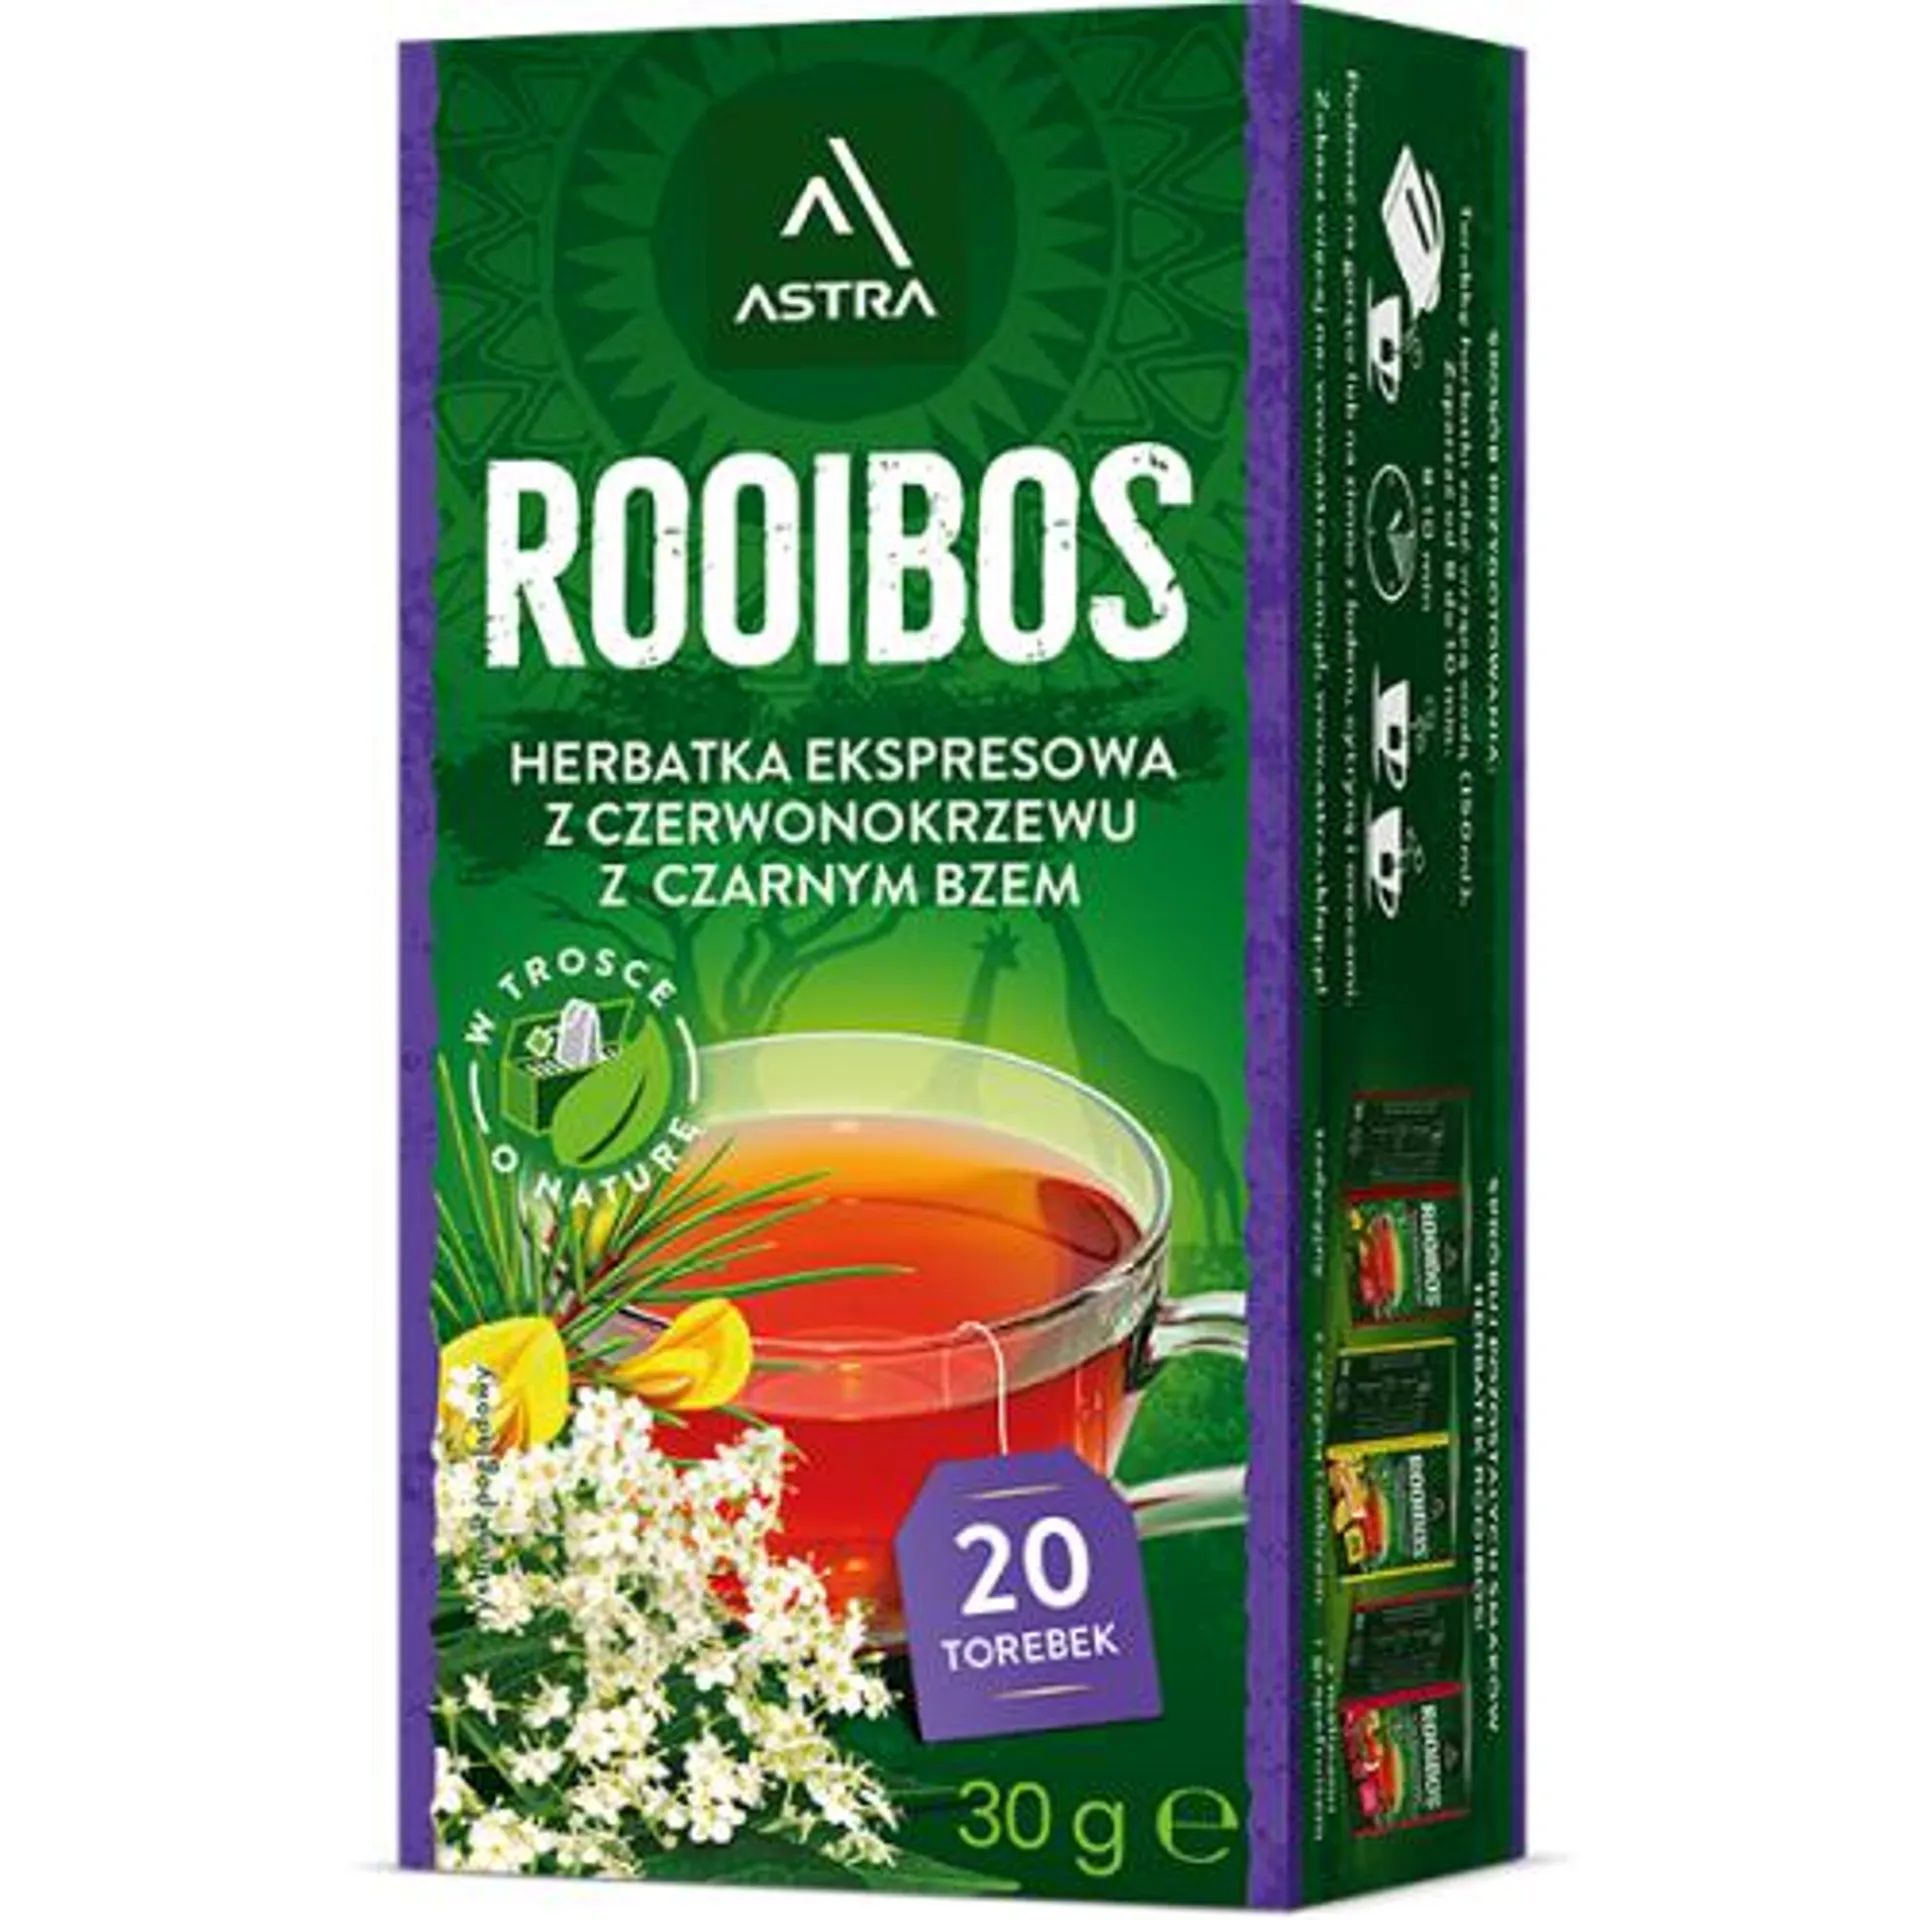 Herbatka Astra Rooibos z czarnym bzem 30g